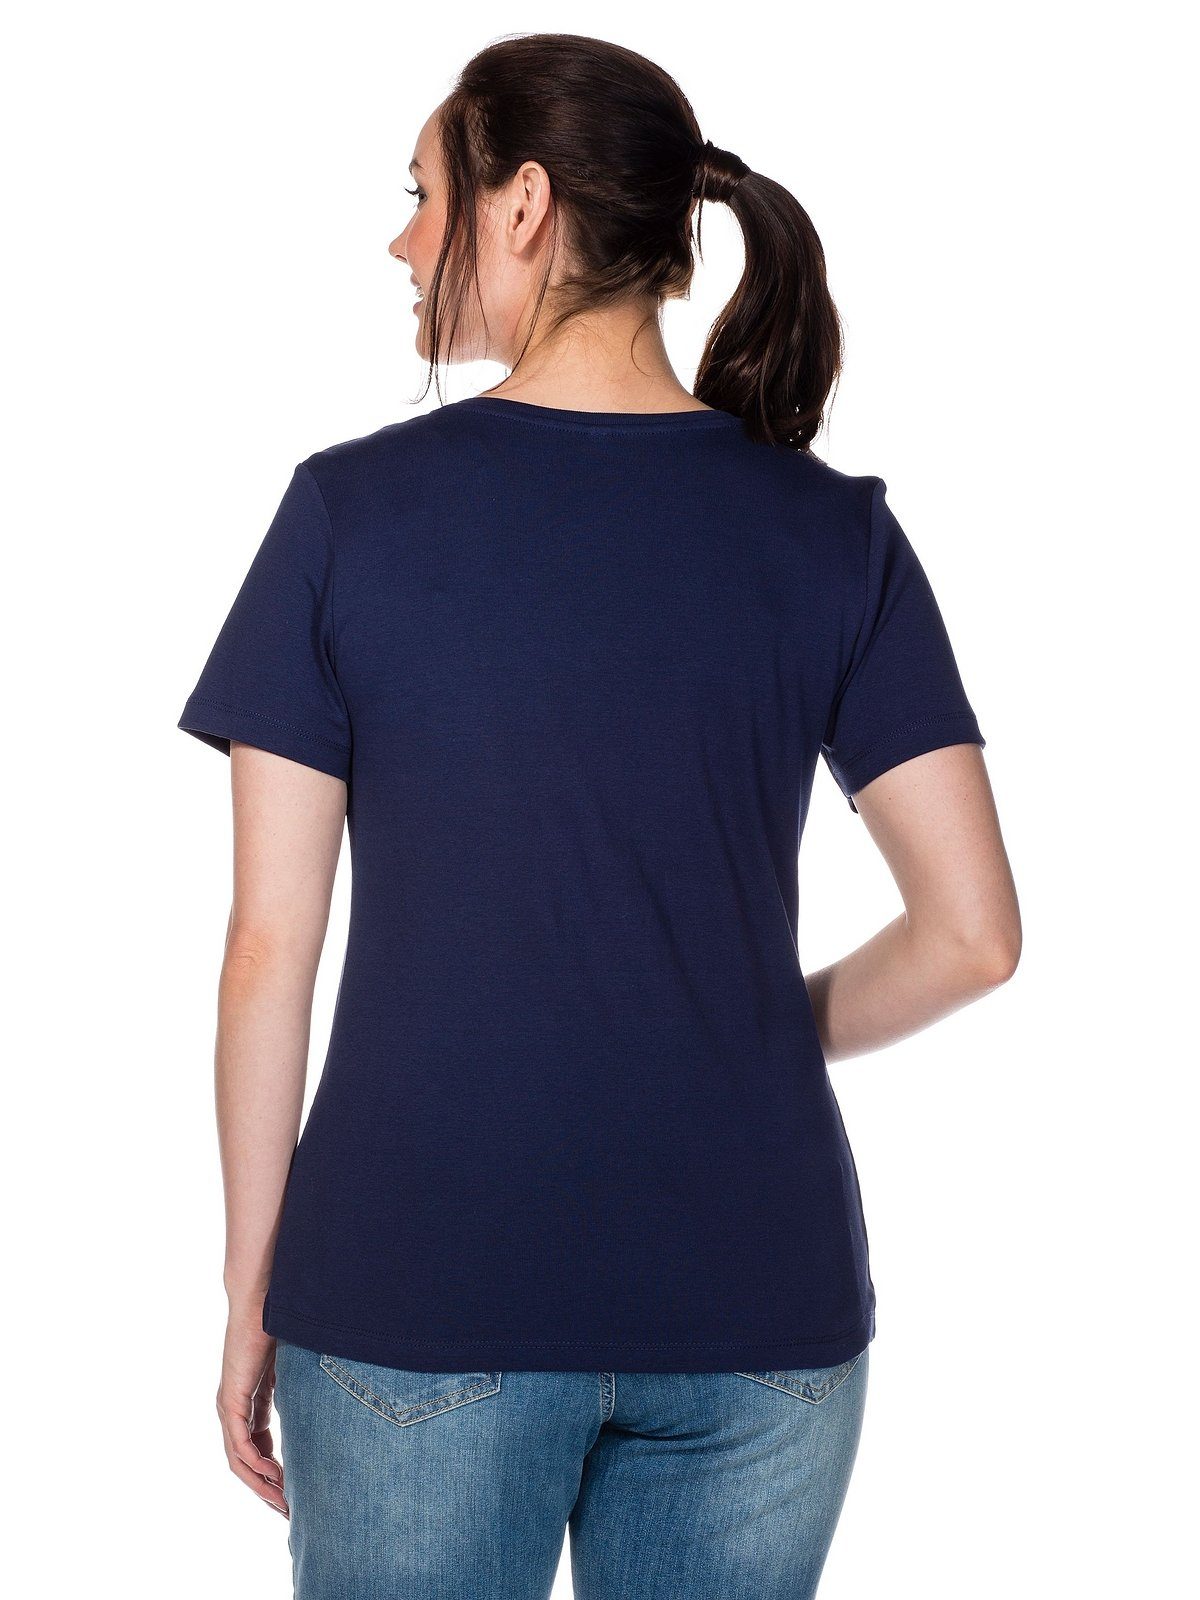 T-Shirt Große aus gerippter marine Qualität fein Sheego Größen